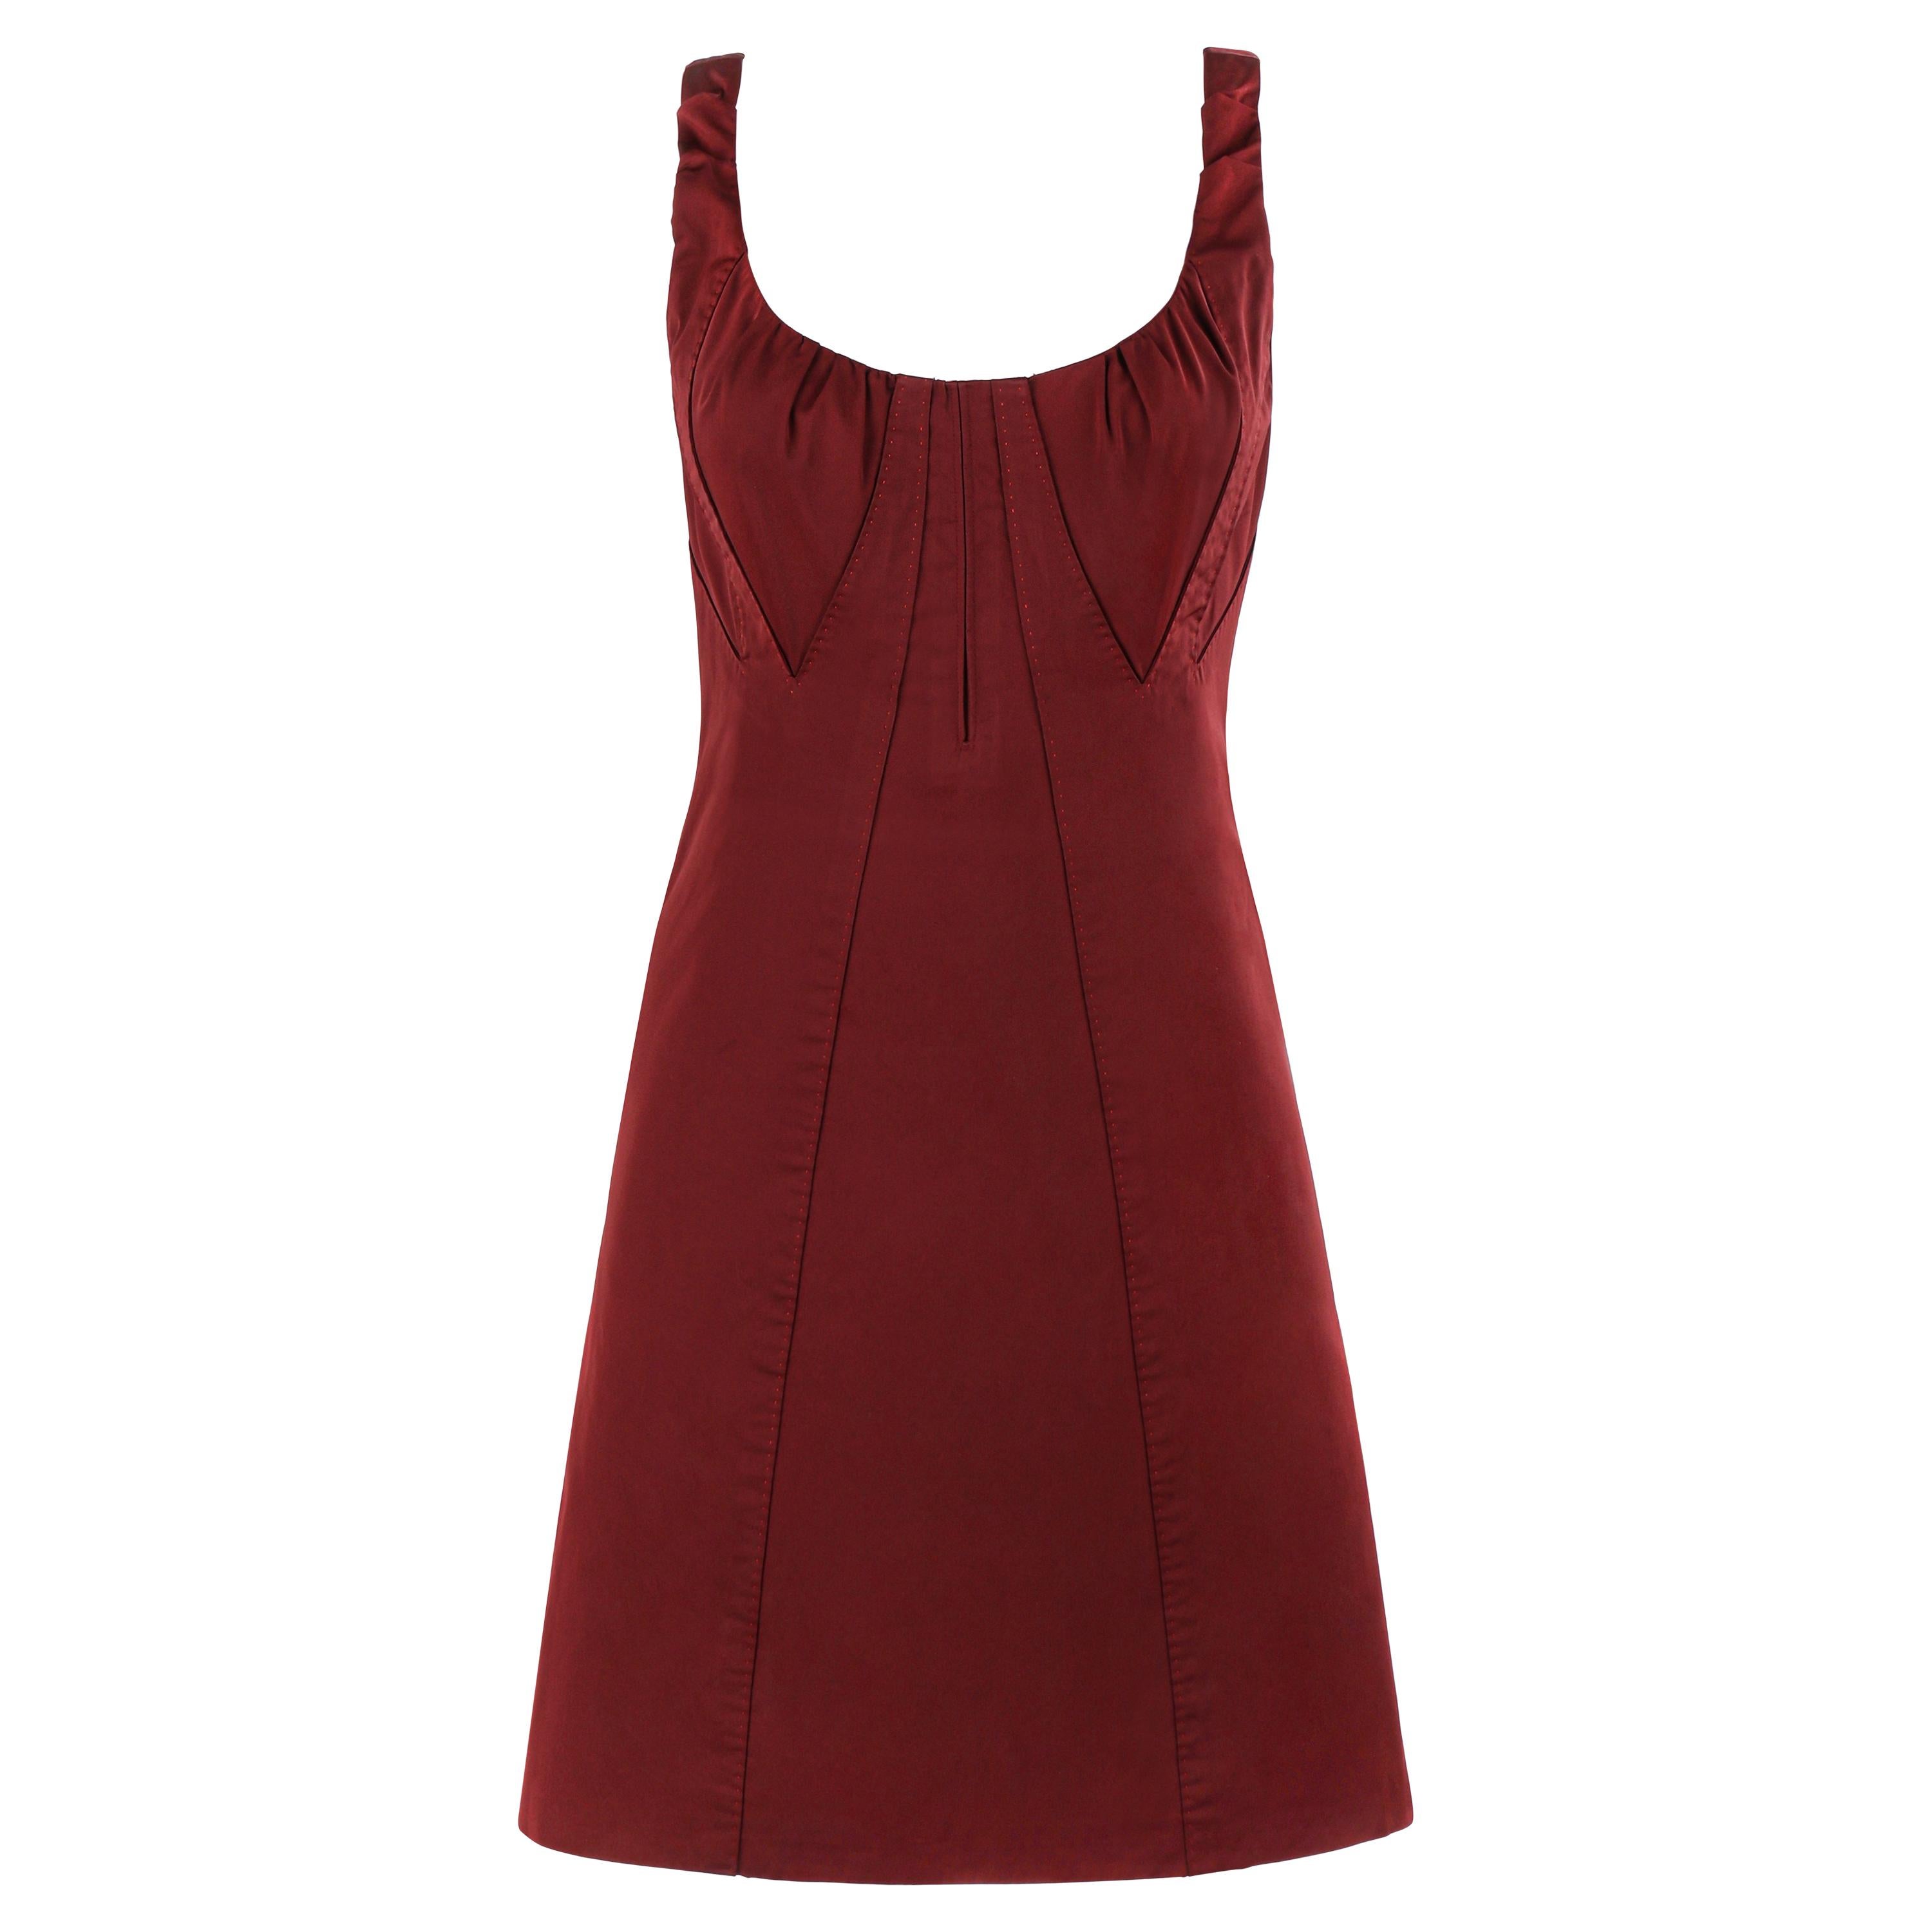 LOUIS VUITTON c.2000’s Burgundy Red Avant Garde Sleeveless Bustier A-Line Dress